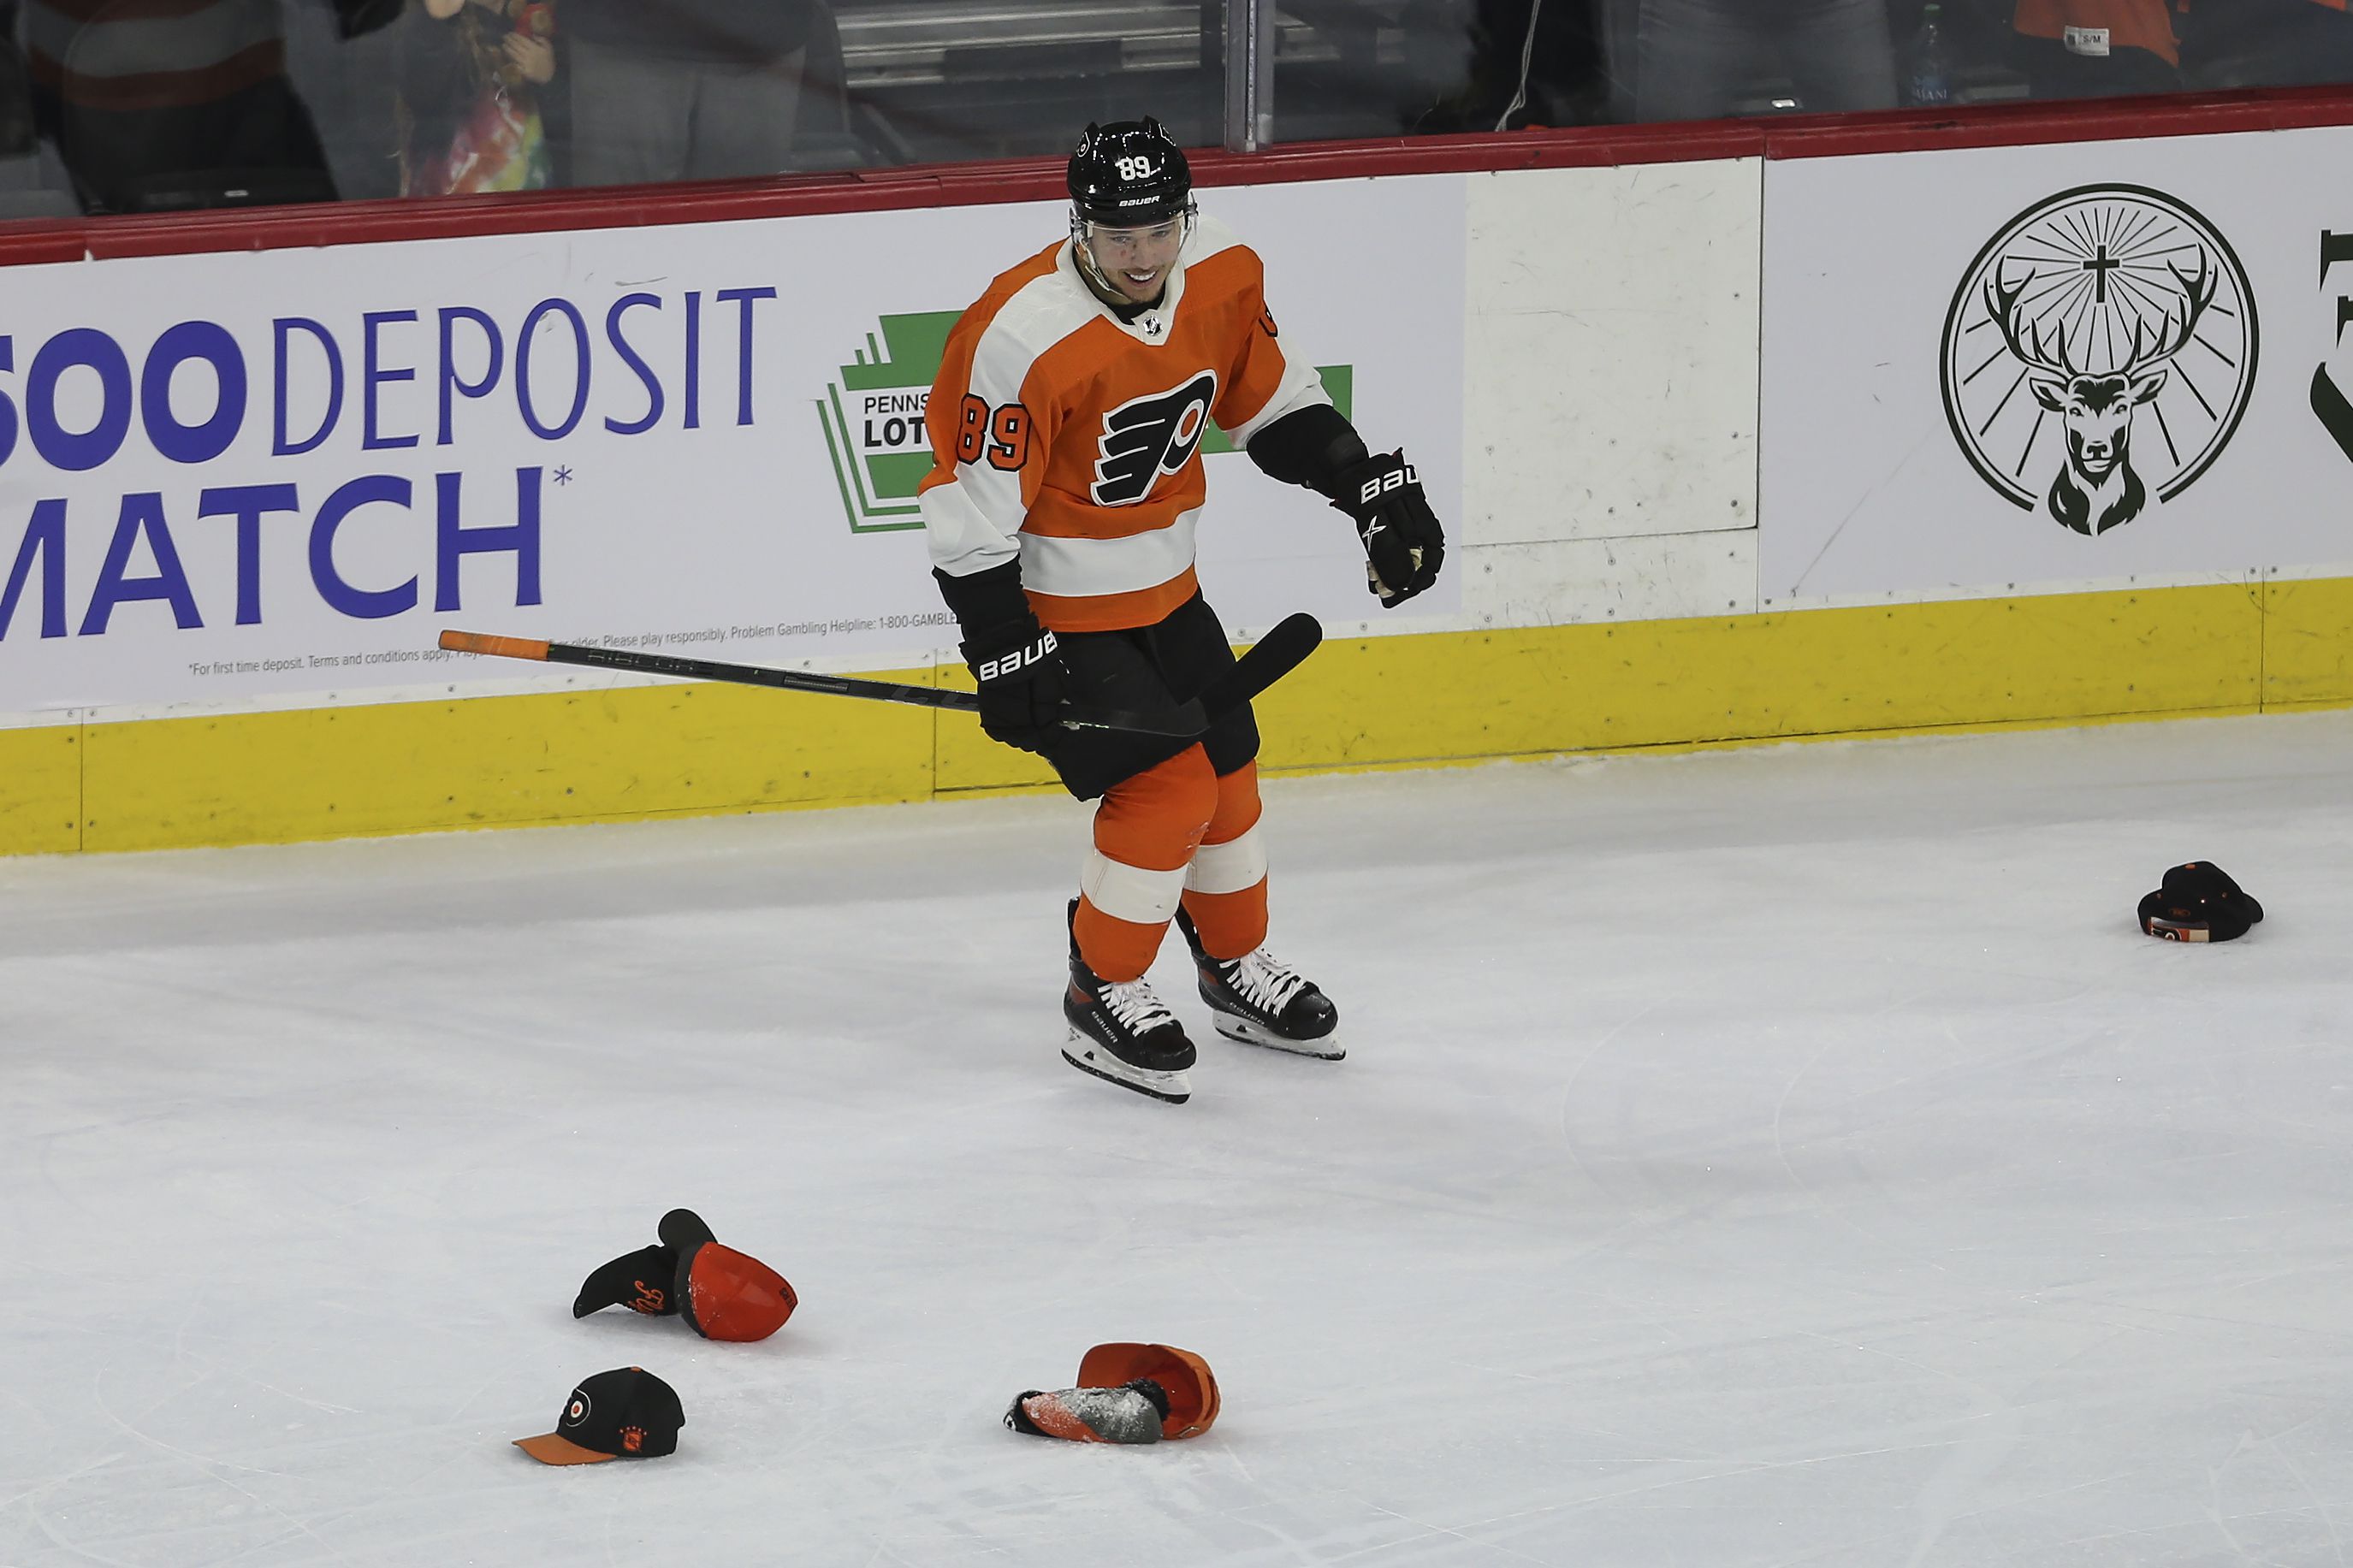 Atkinson's hat trick leads Flyers past Devils 6-1